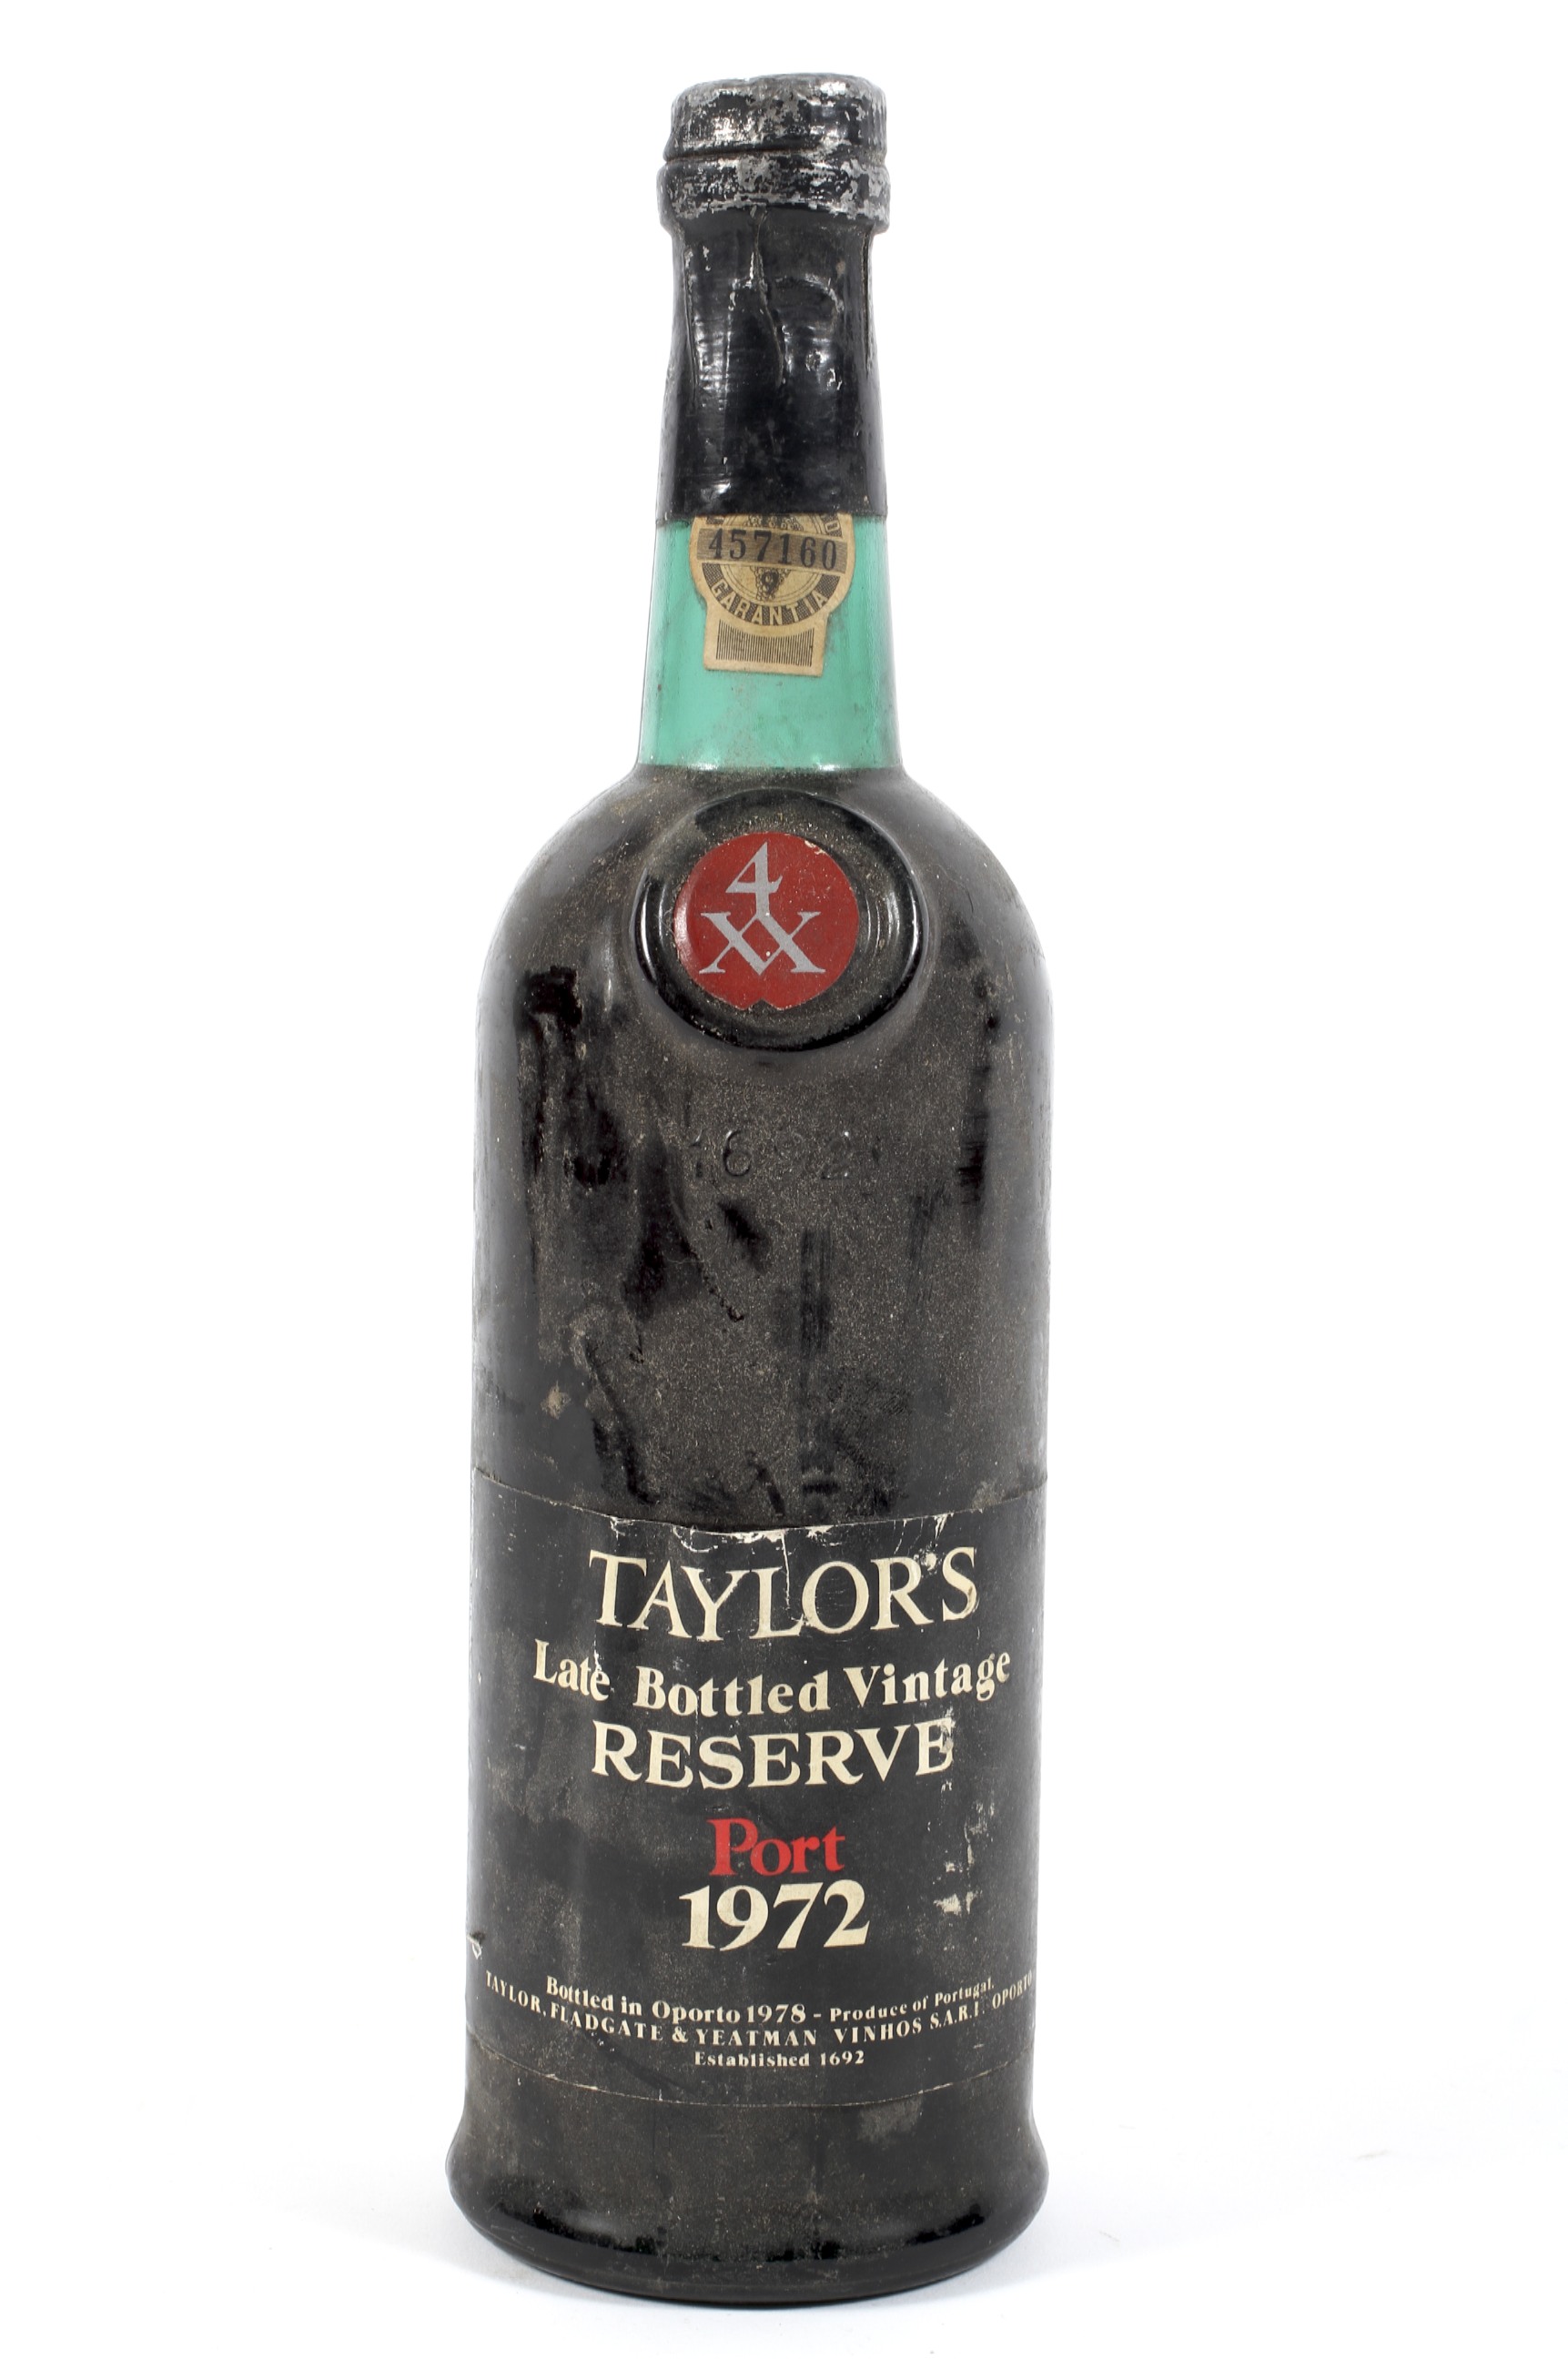 A bottle of Taylors late bottled vintage reserve Port, 1972,